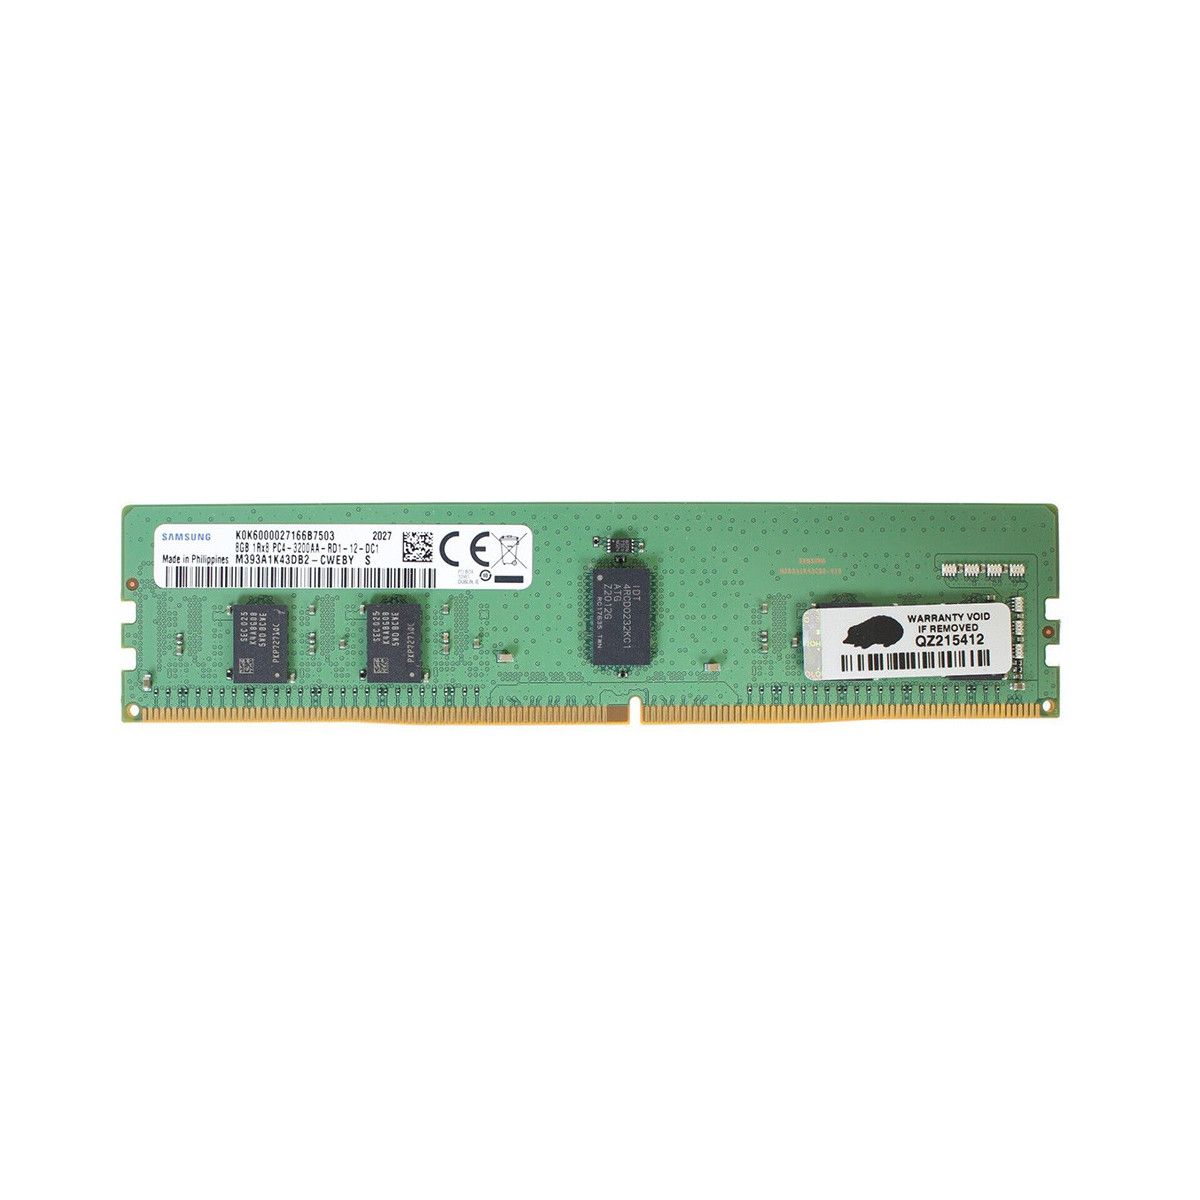 AB214250-MS - Memstar 1x 8GB DDR4-3200 RDIMM PC4-25600R - Mem-Star compatibel OEM geheugen 1 - Memstar 